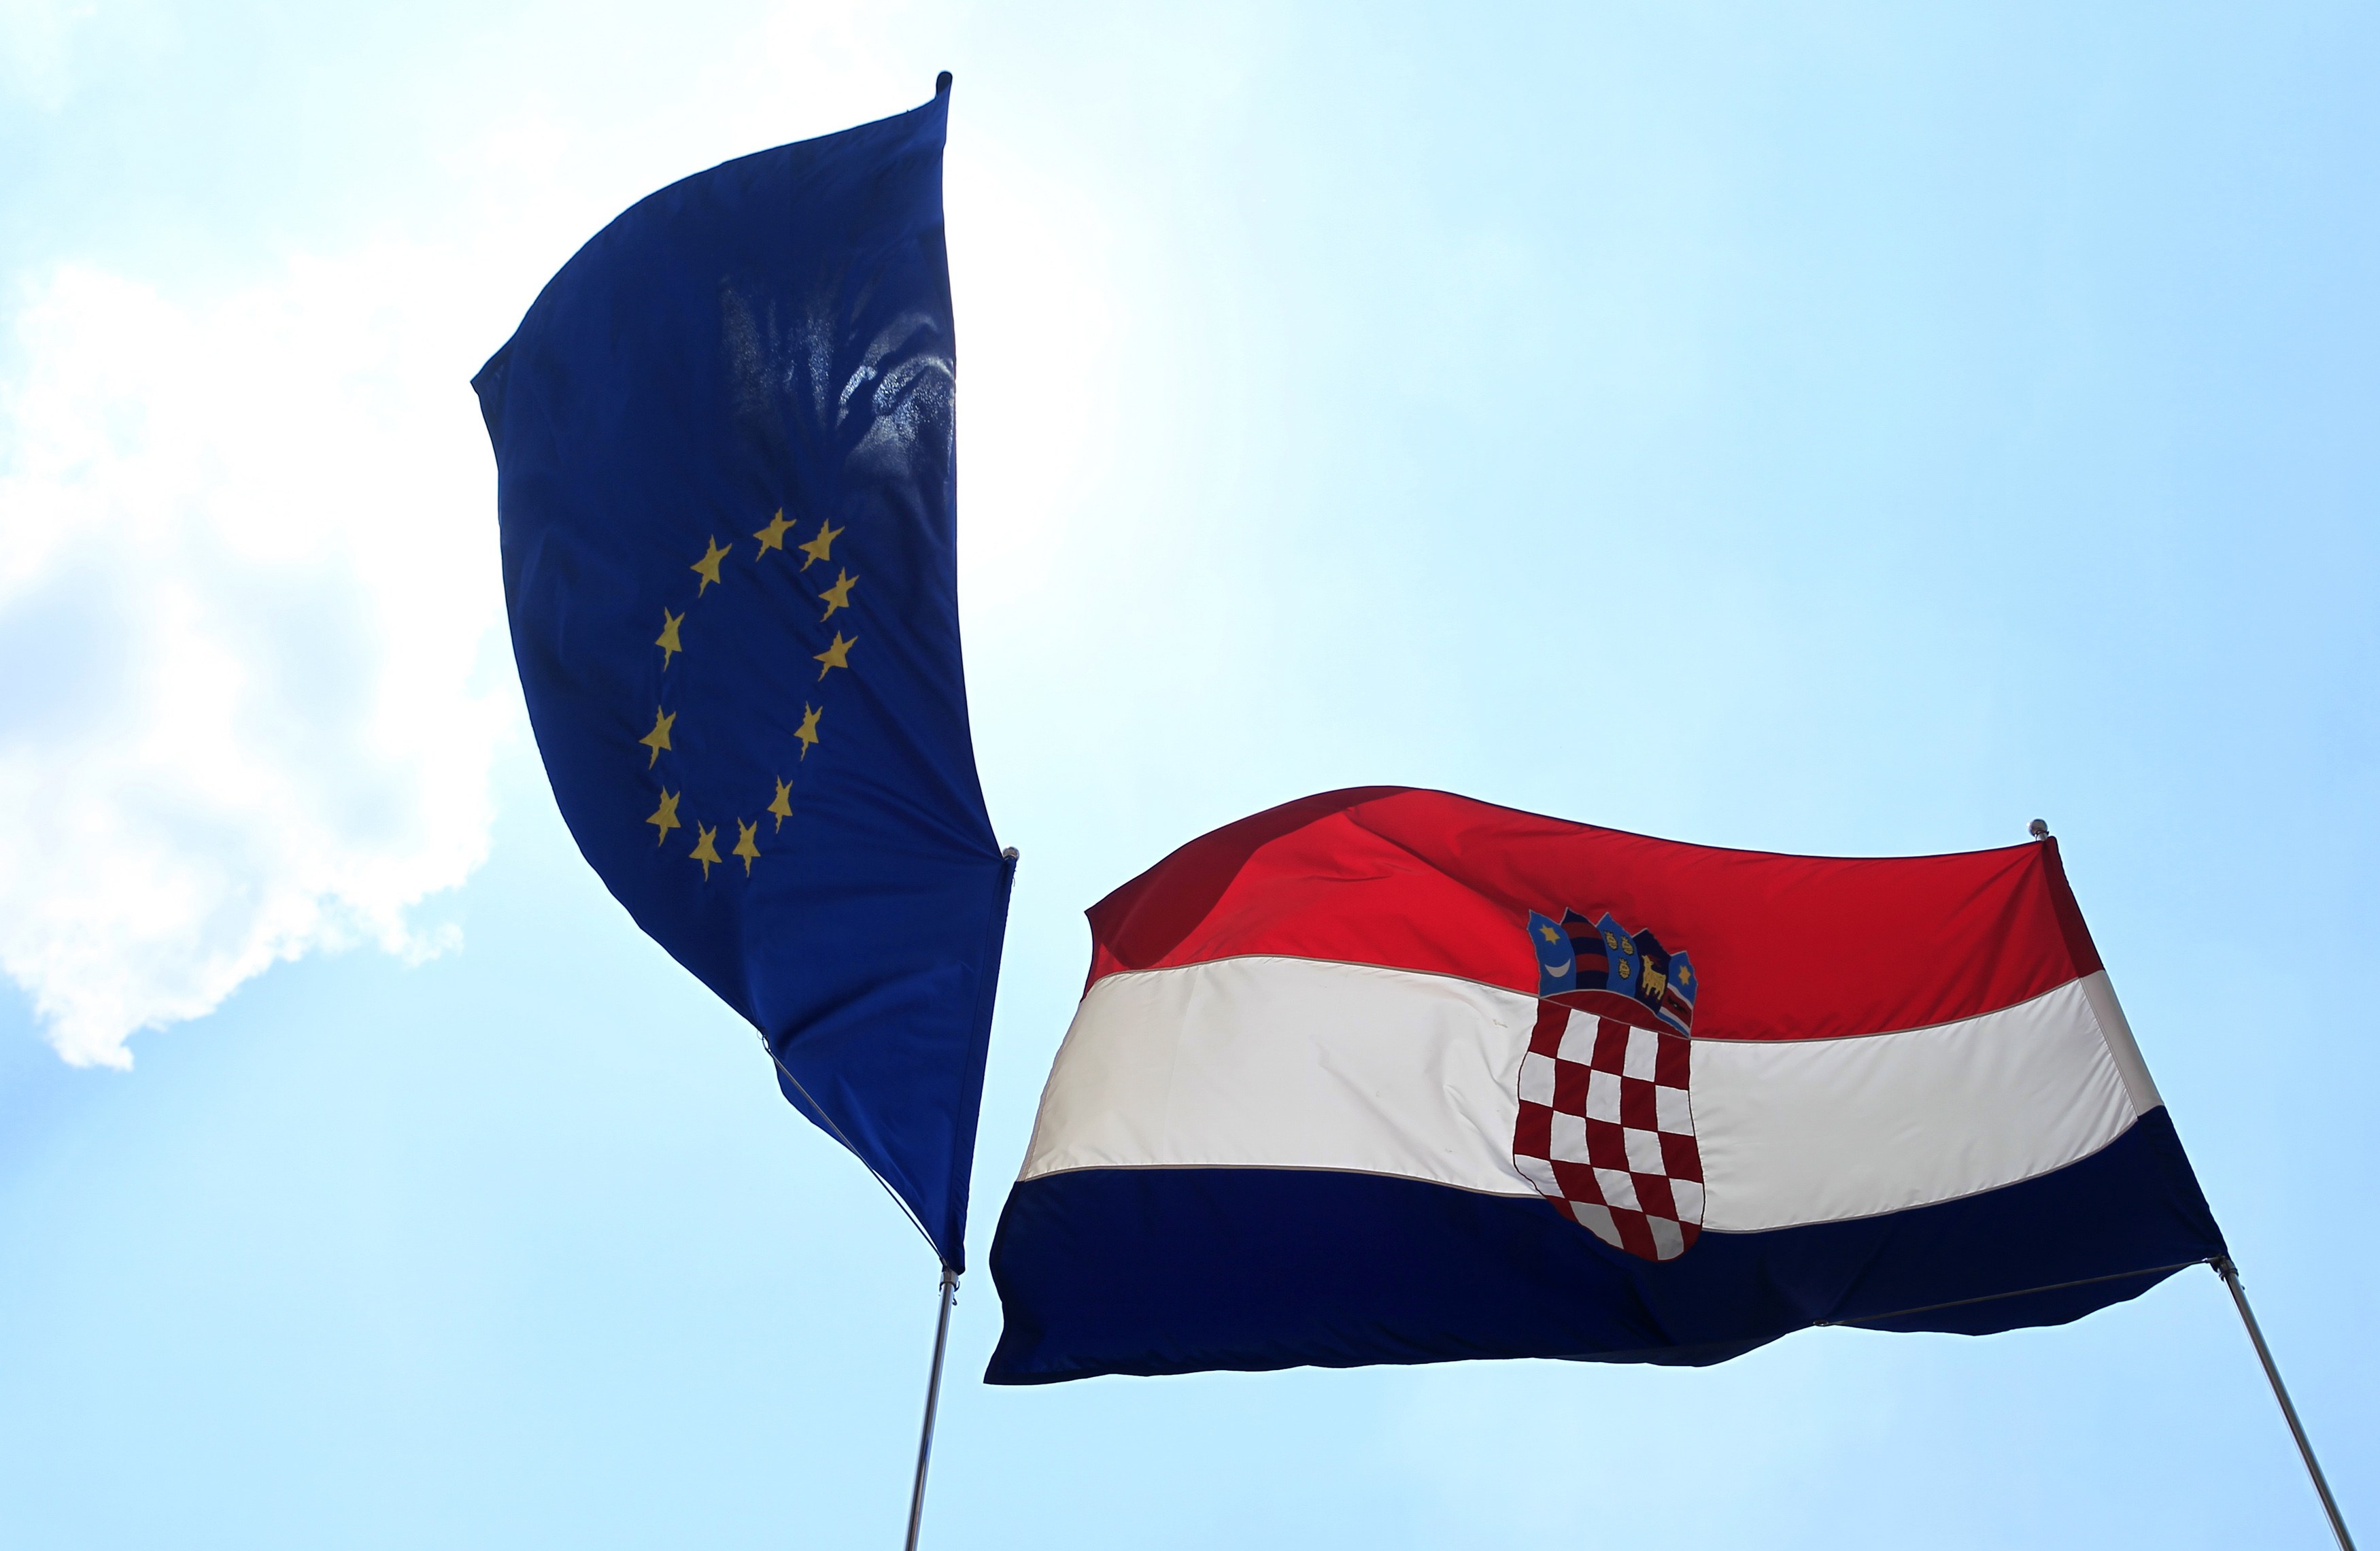 Ήπια ύφεση αλλά μεγαλύτερο έλλειμμα και χρέος προβλέπεται για τη Κροατία